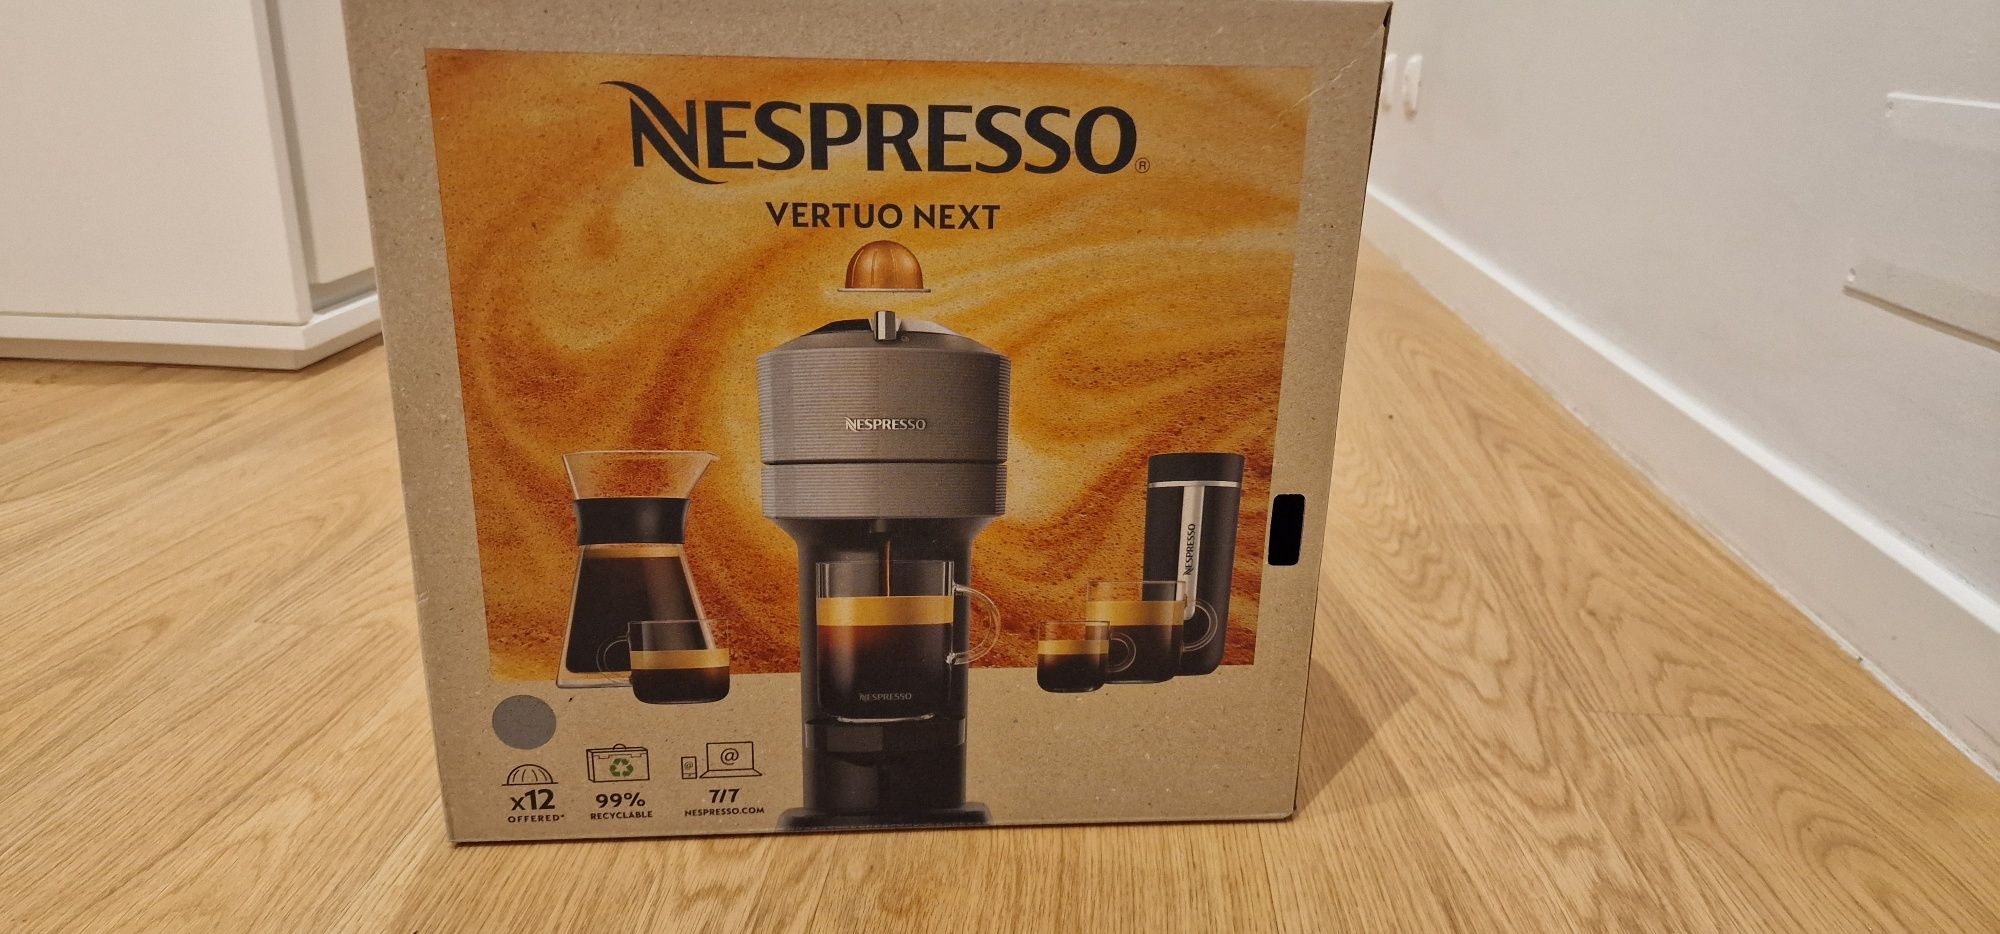 Vendo maquina café Nespresso nova